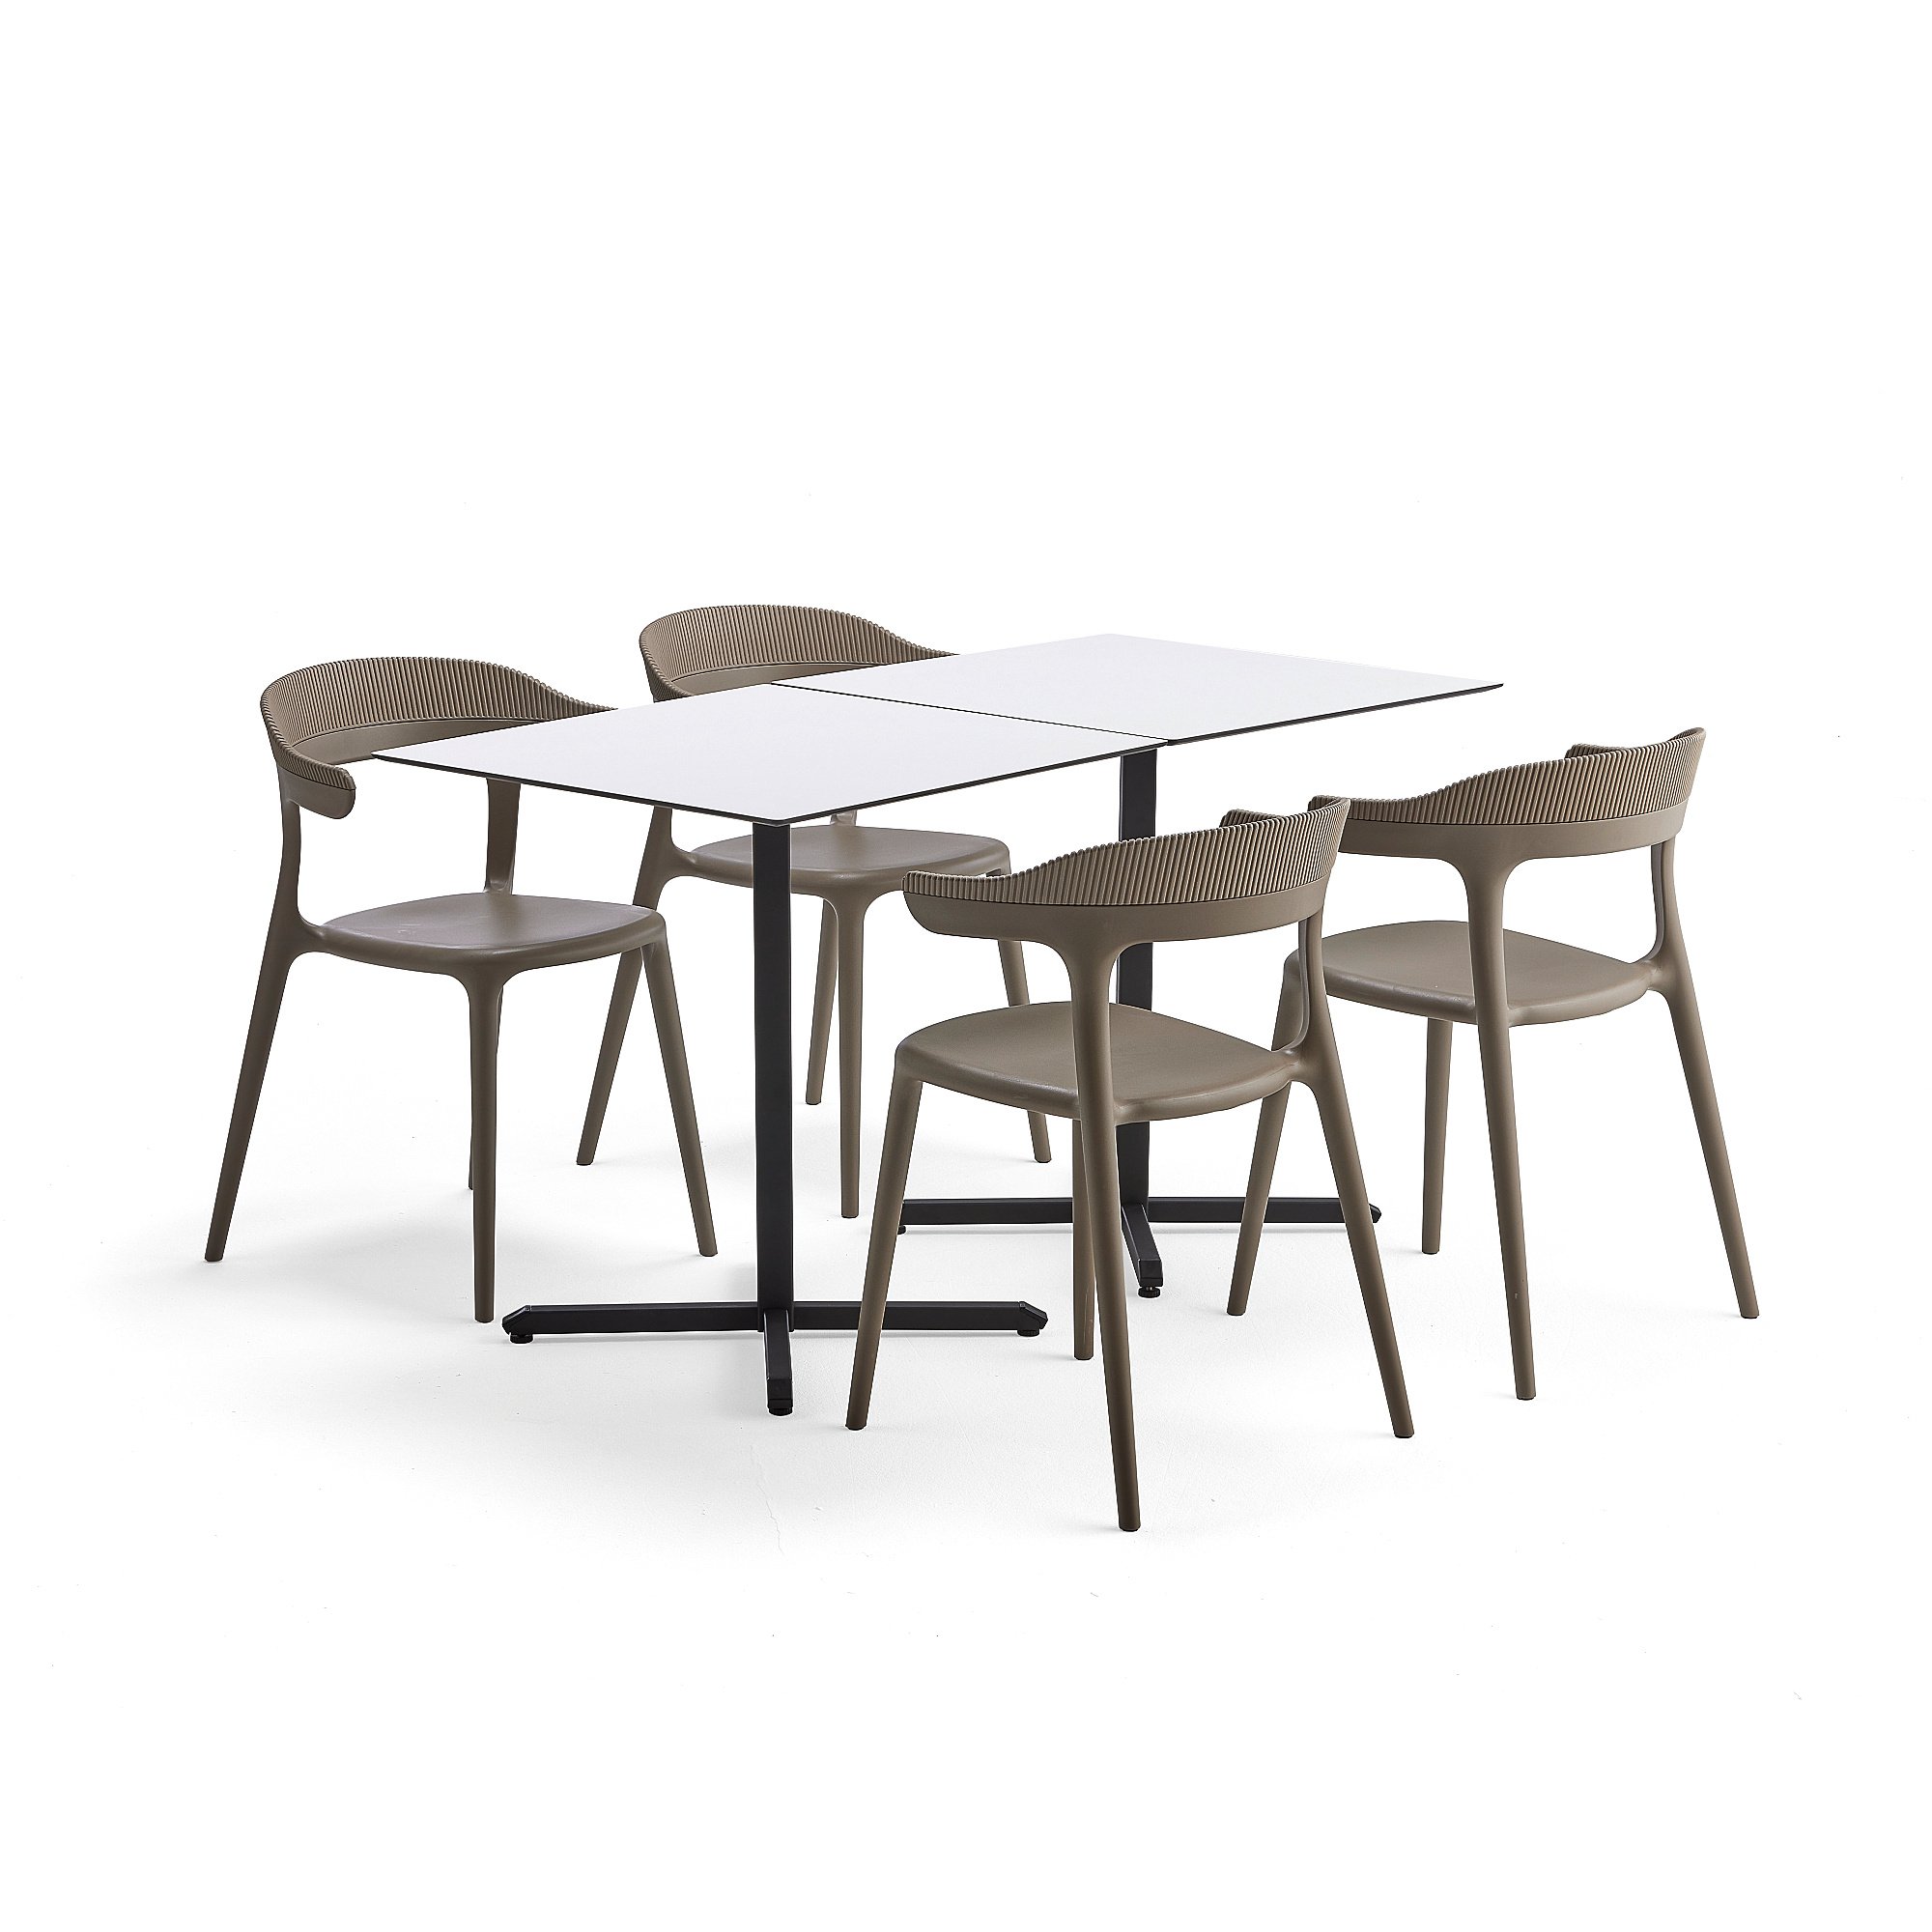 E-shop Jedálenská zostava: Stôl Becky + 4 šedohnedé stoličky Creek